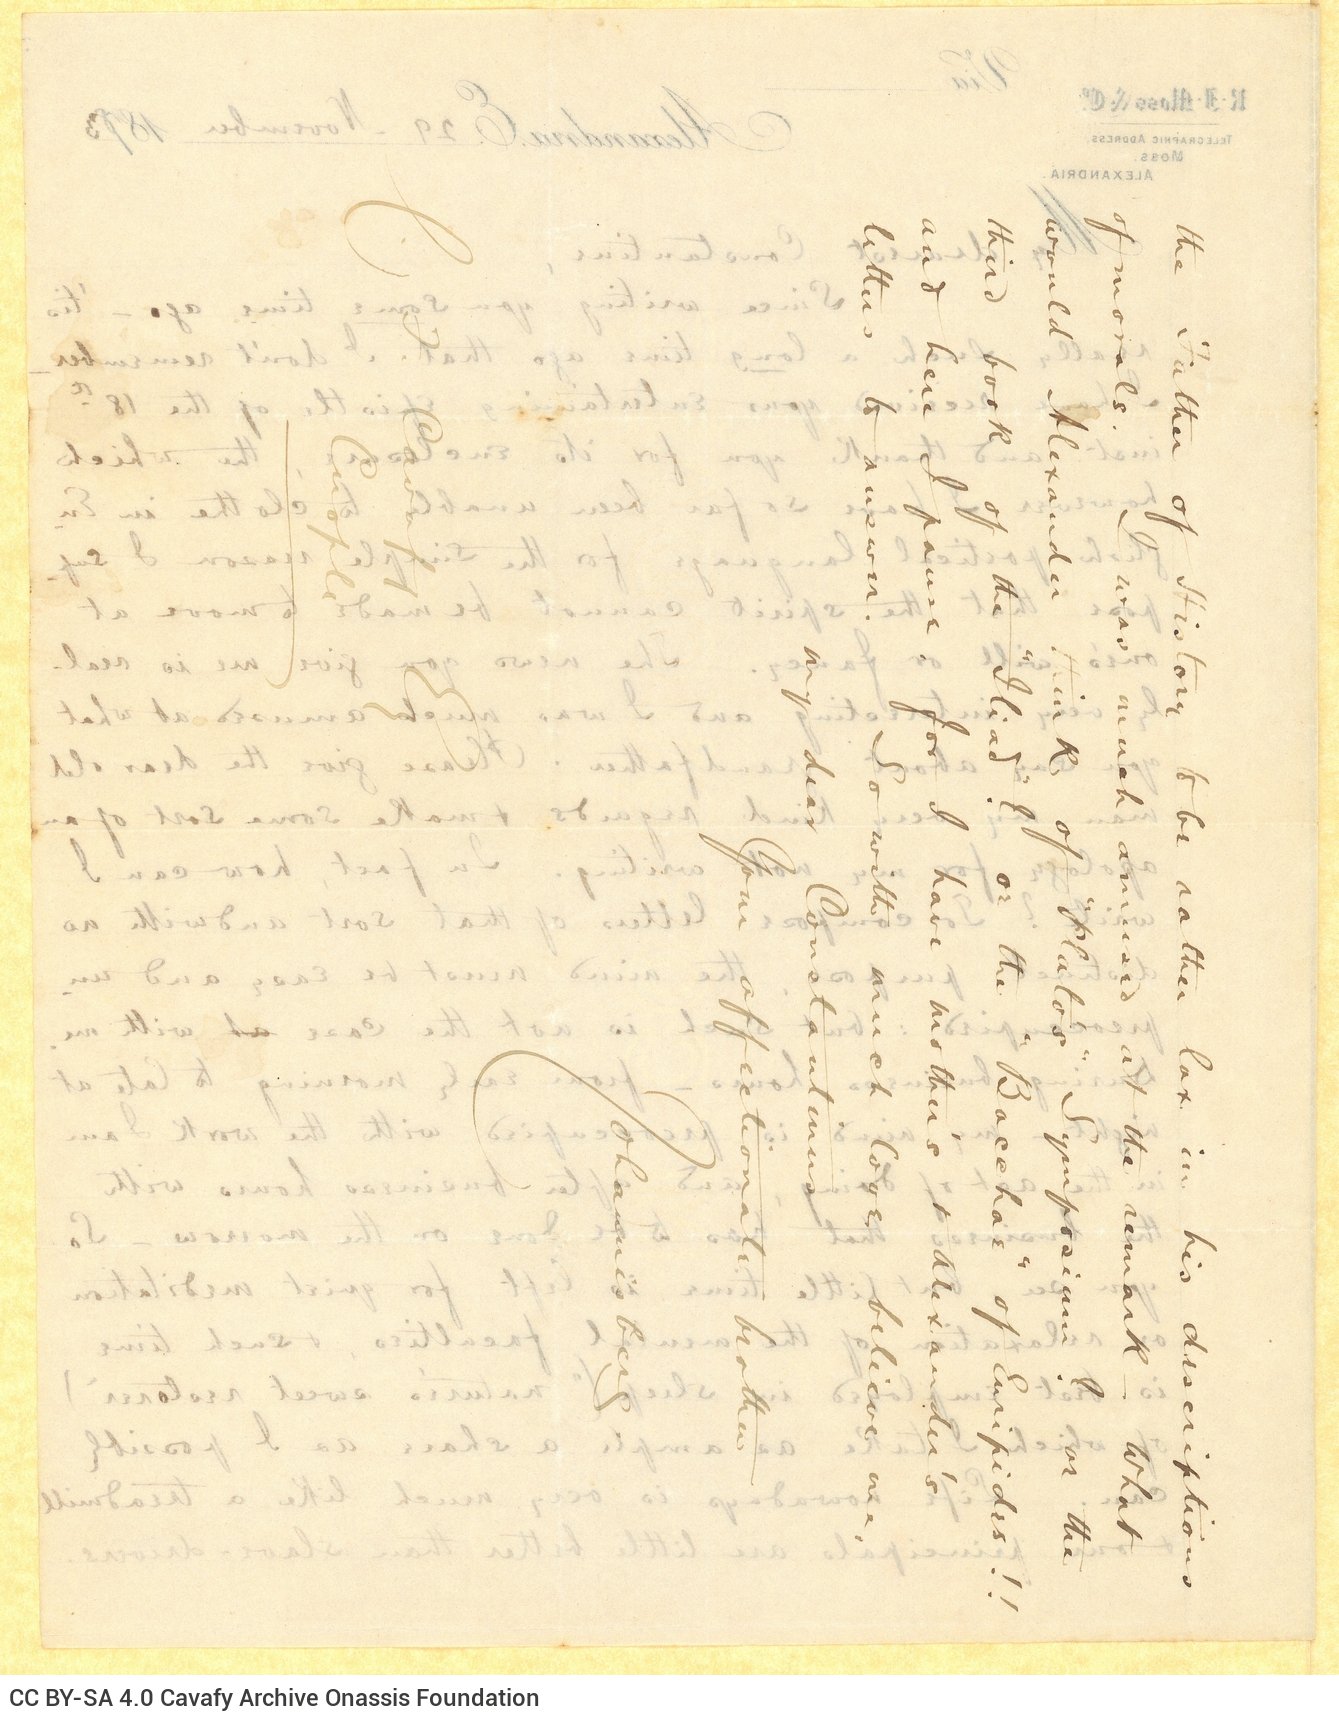 Χειρόγραφη επιστολή του Τζων Καβάφη προς τον Κ. Π. Καβάφη στις τρεις �